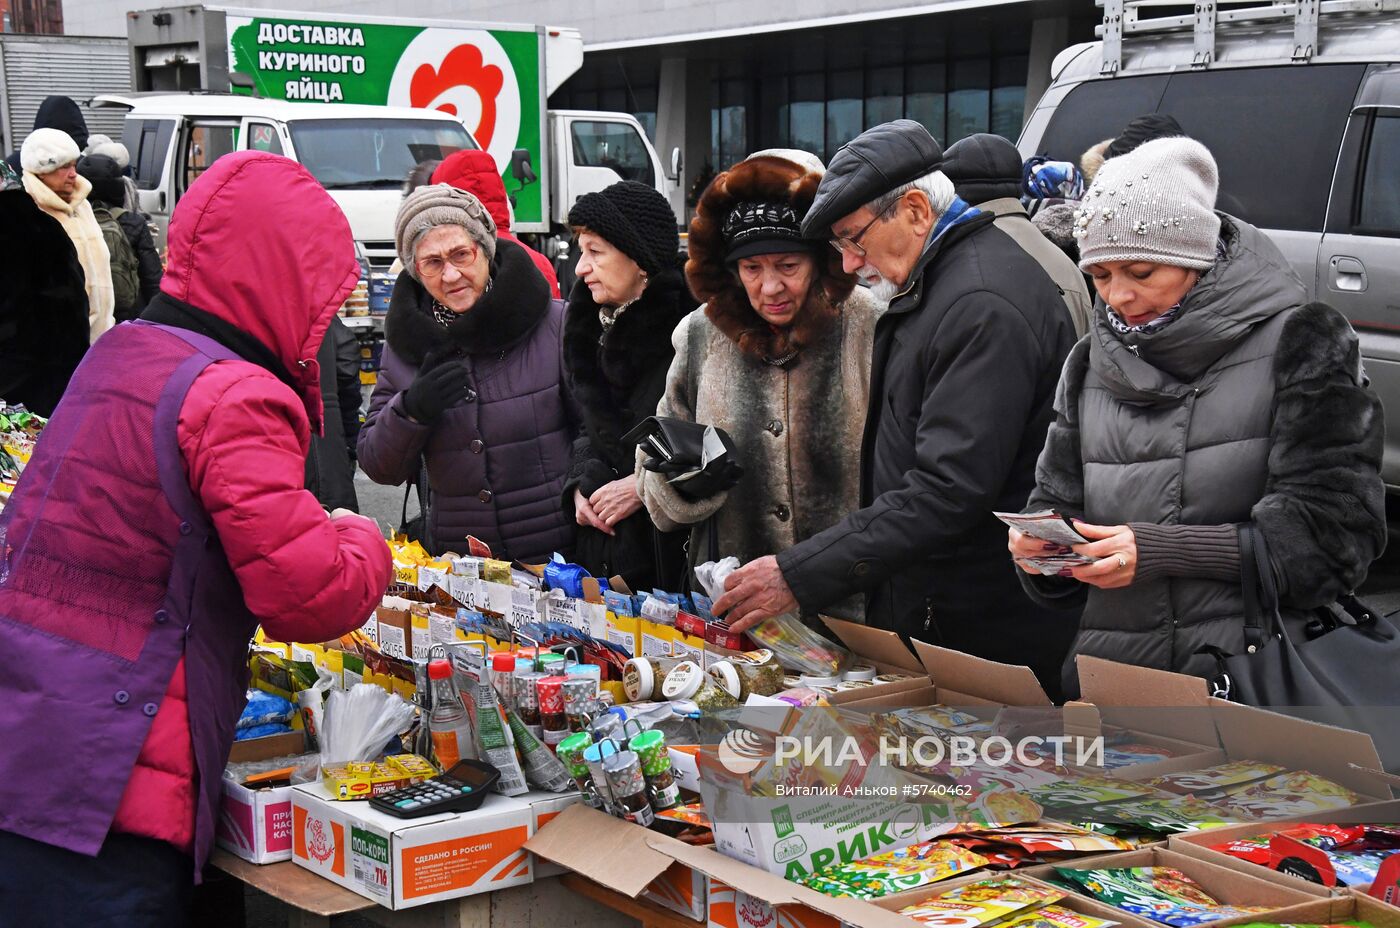 Продовольственная ярмарка во Владивостоке